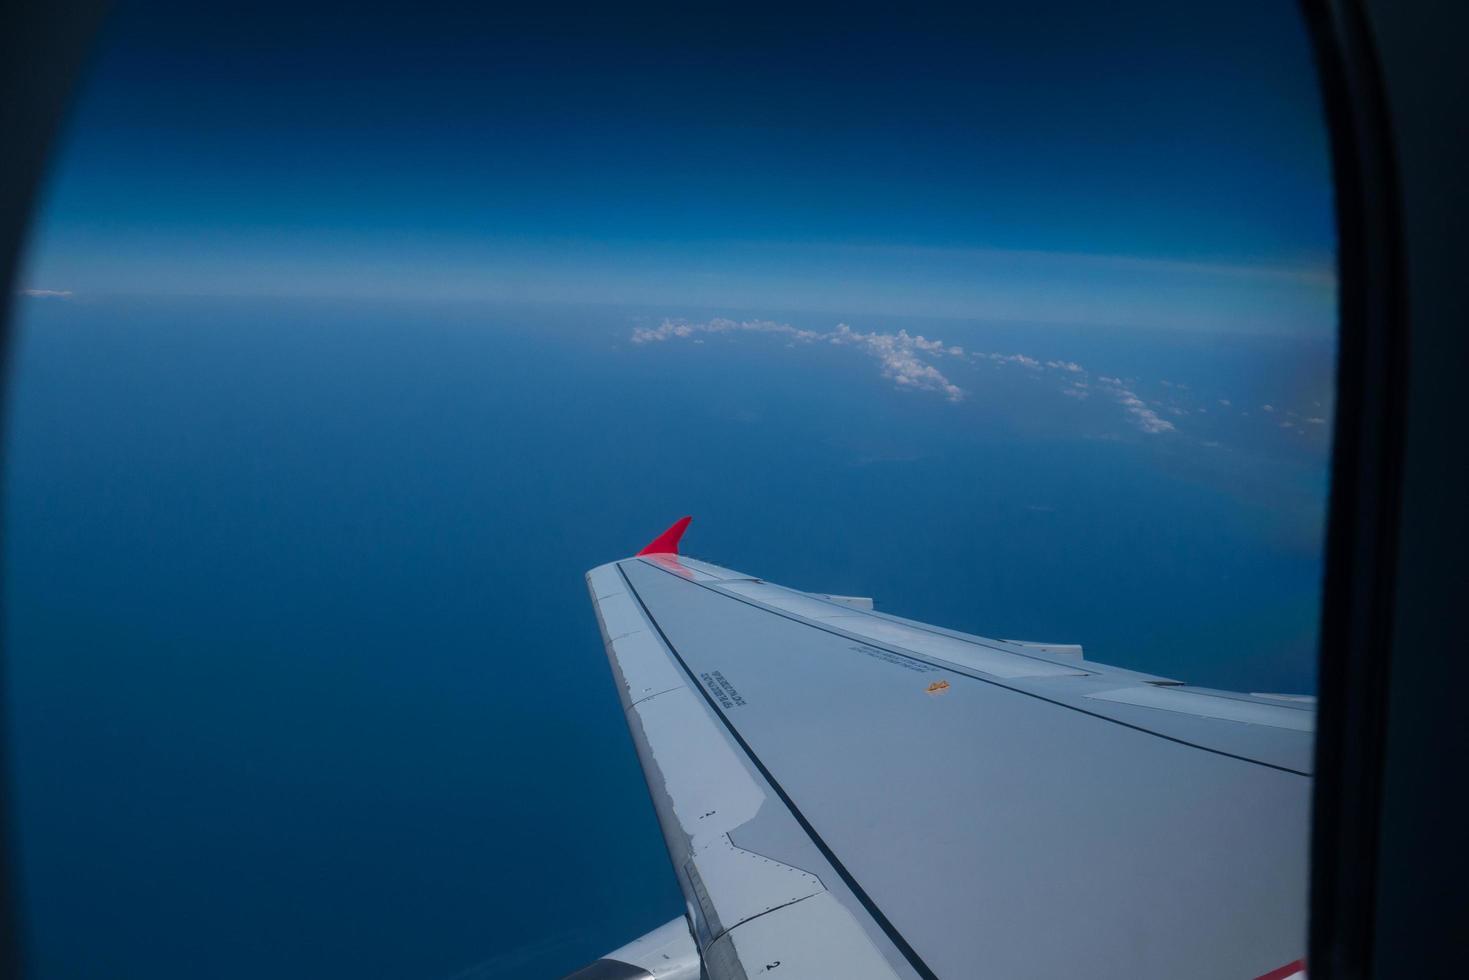 cielo azul y nubes en avion foto